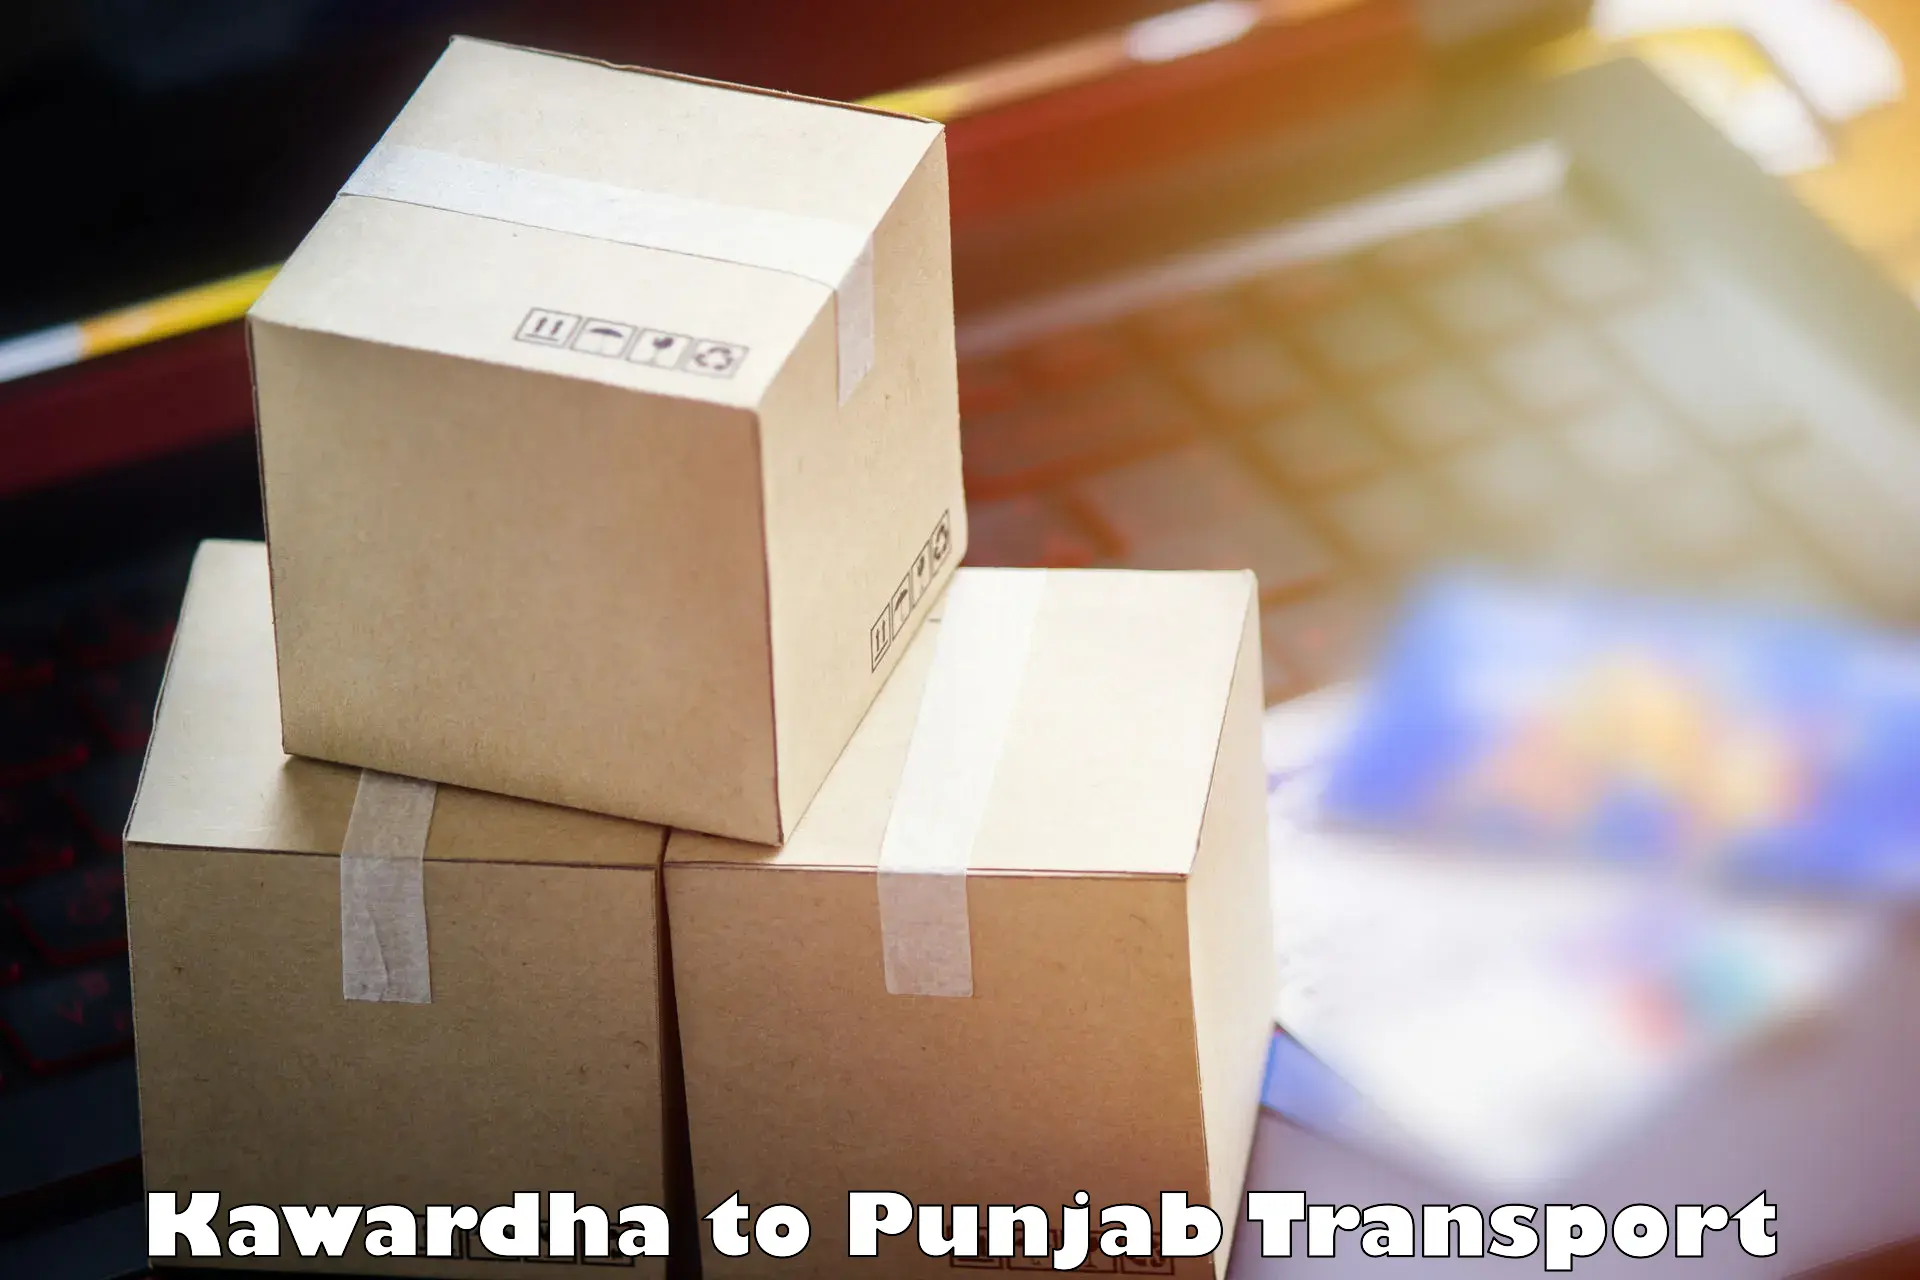 Online transport in Kawardha to Punjab